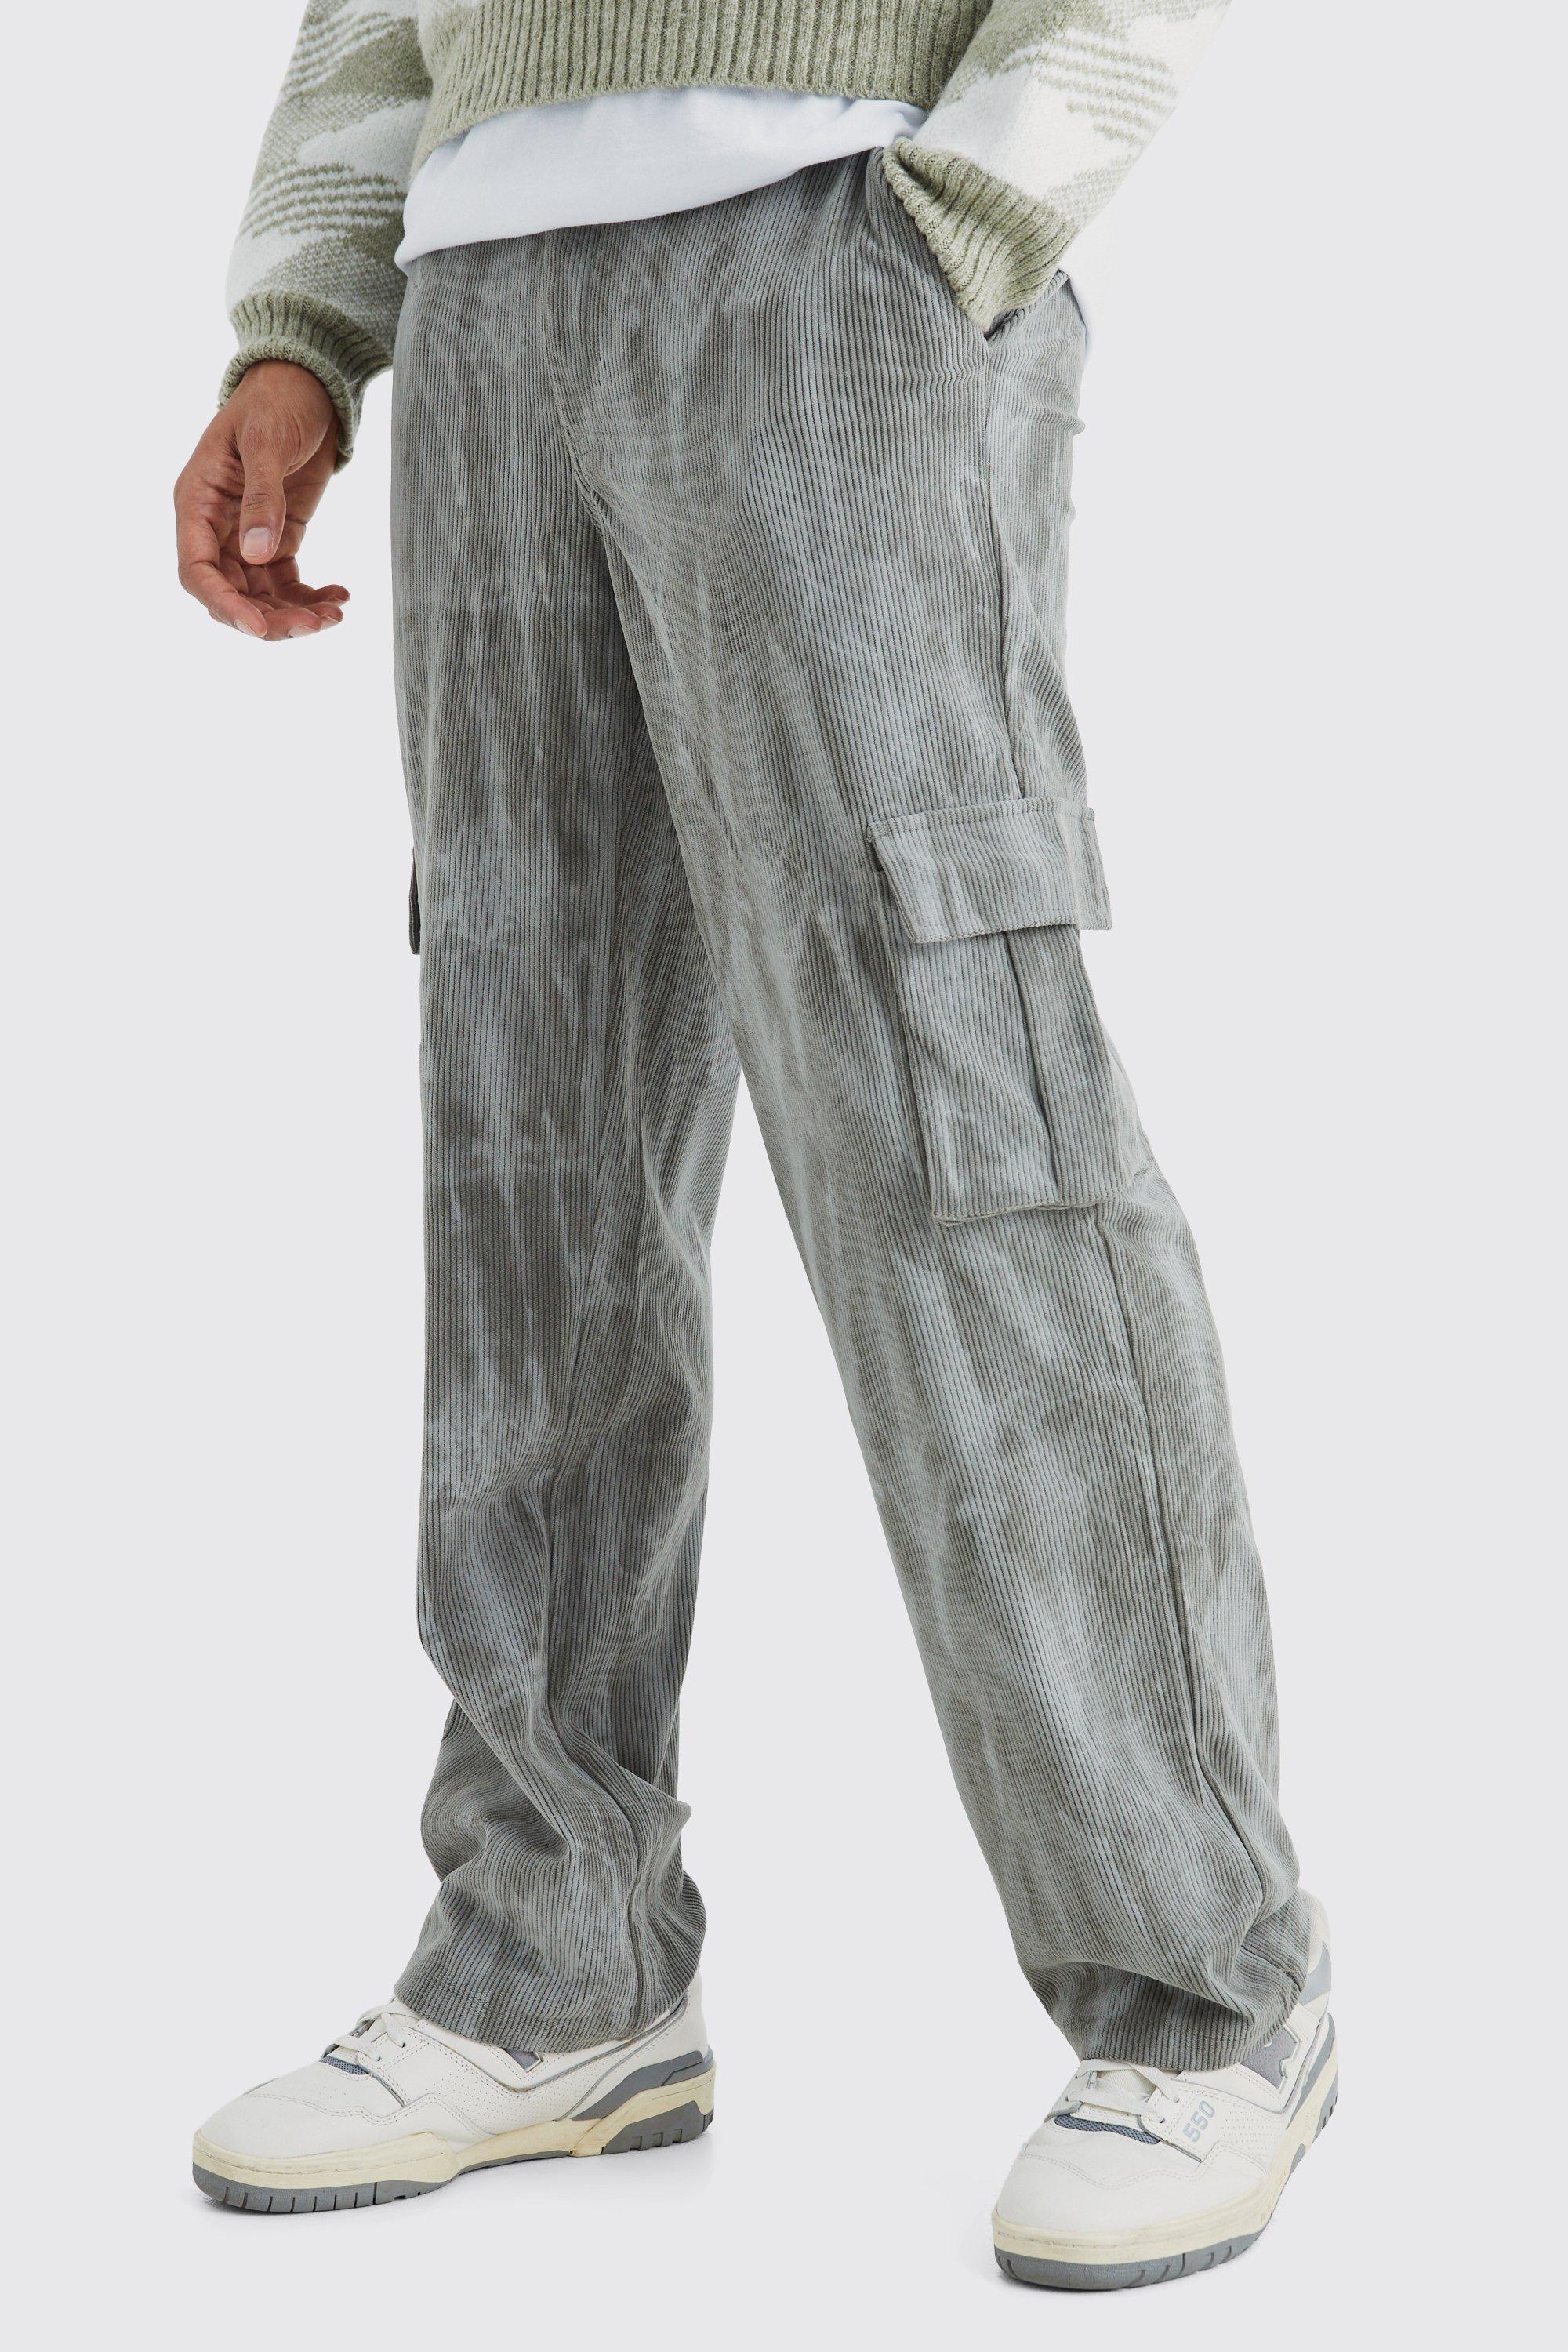 pantalon cargo tie dye homme - gris - 28r, gris